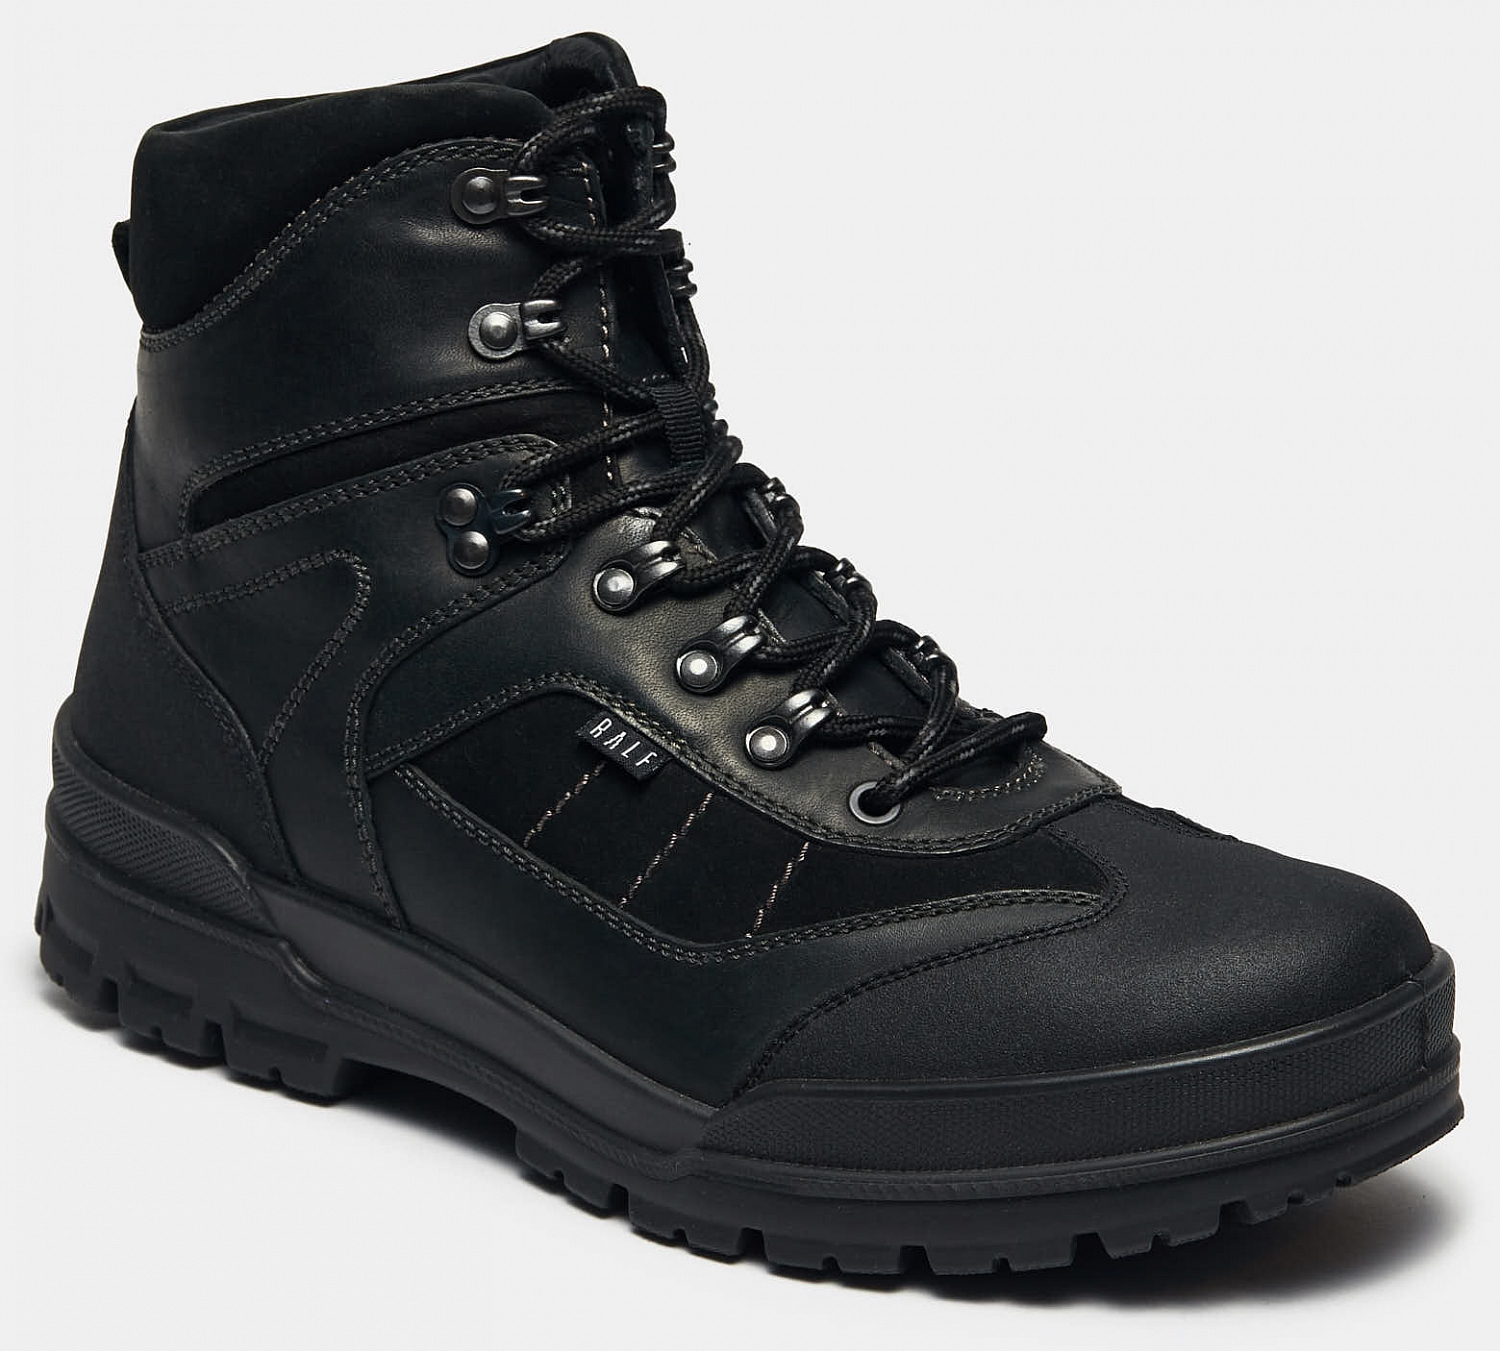 Высокие ботинки мужские ROVER (цвет черный, натуральнаякожа,нубук,искусственная кожа) арт. 552206ЧН — купить по цене 5900 р. винтернет-магазине RALF RINGER